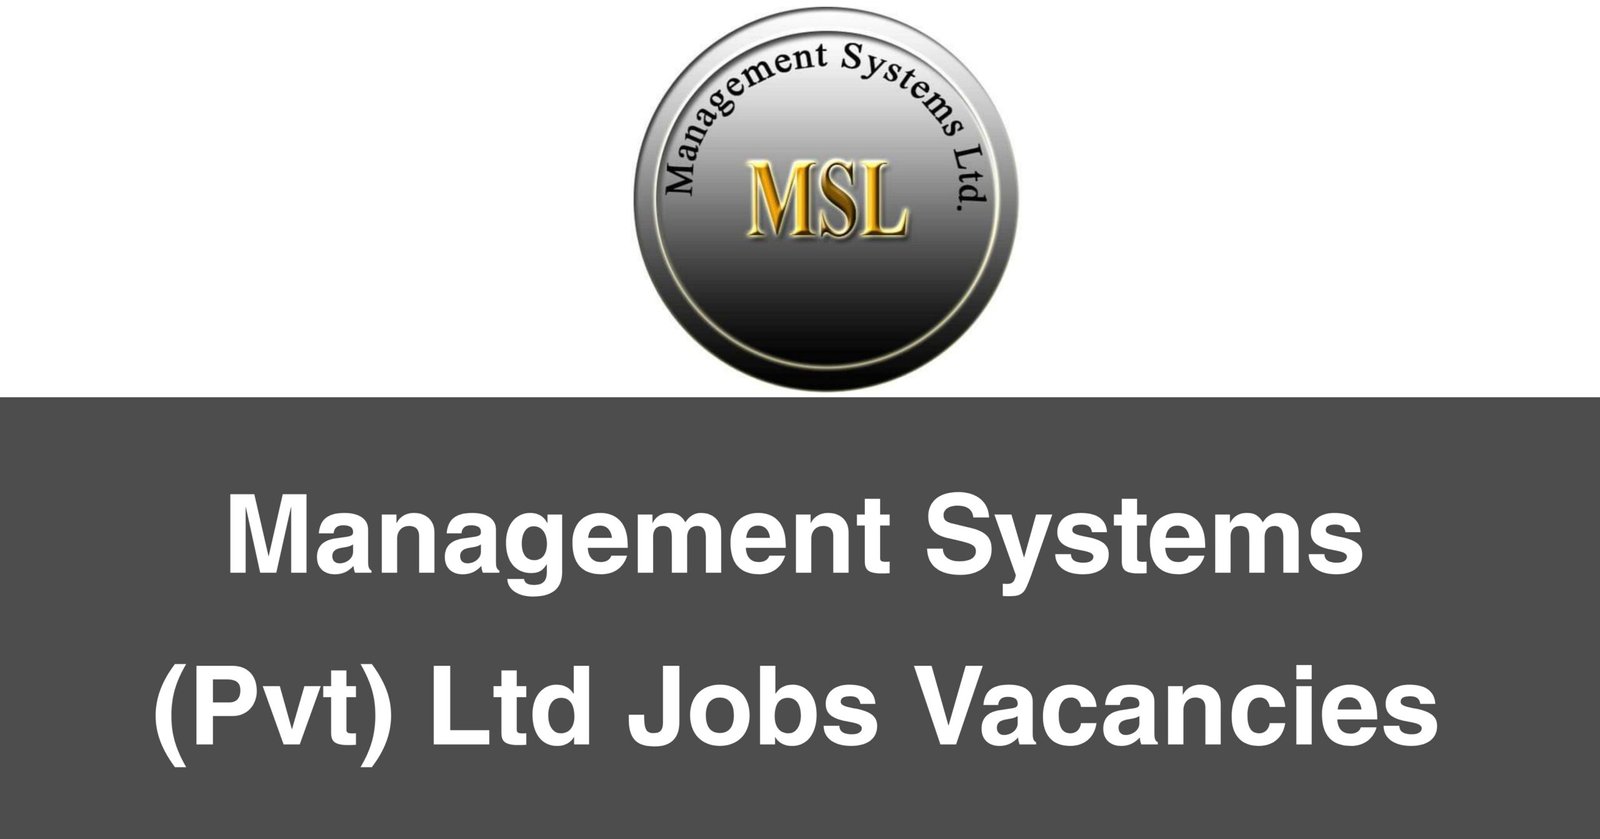 Management Systems (Pvt) Ltd Jobs Vacancies